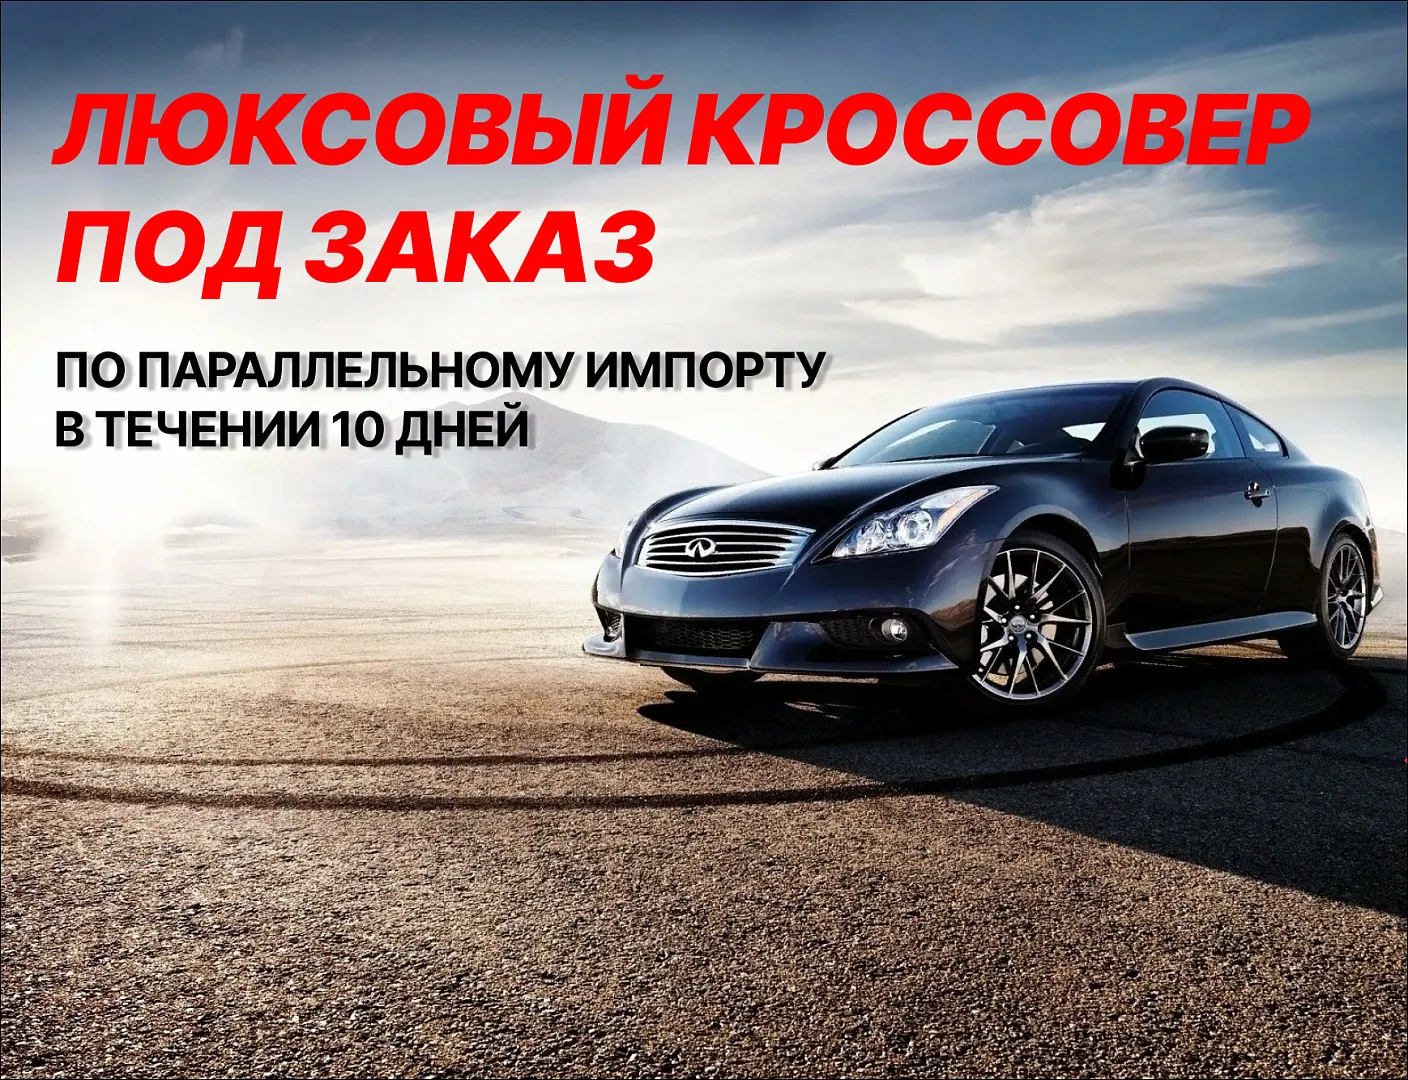 Новый автомобиль БЕЗ ПРОБЕГА под заказ по параллельному импорту!